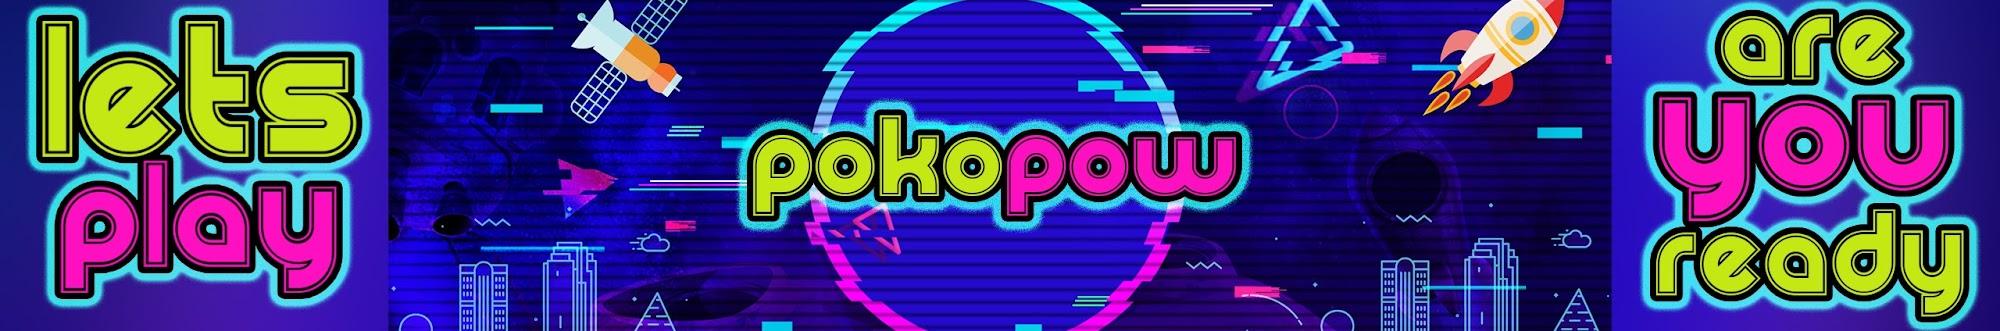 PokoPow